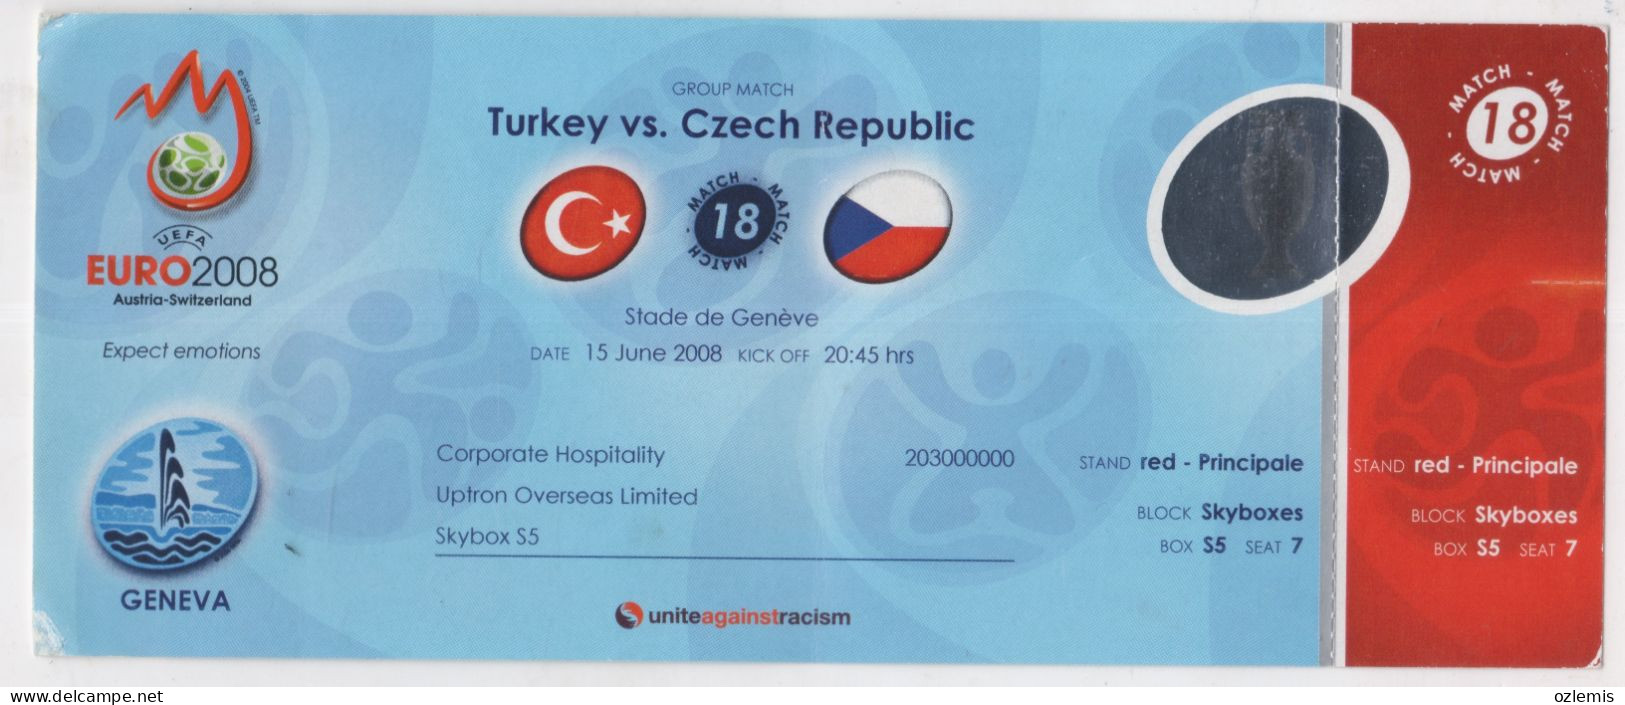 EURO 2008,AUSTRIA-SWITZERLAND ,GROUP MATCH ,TURKEY - CZECH REPUBLIC ,STADE DE GENEVA ,MATCH TICKET, - Tickets D'entrée